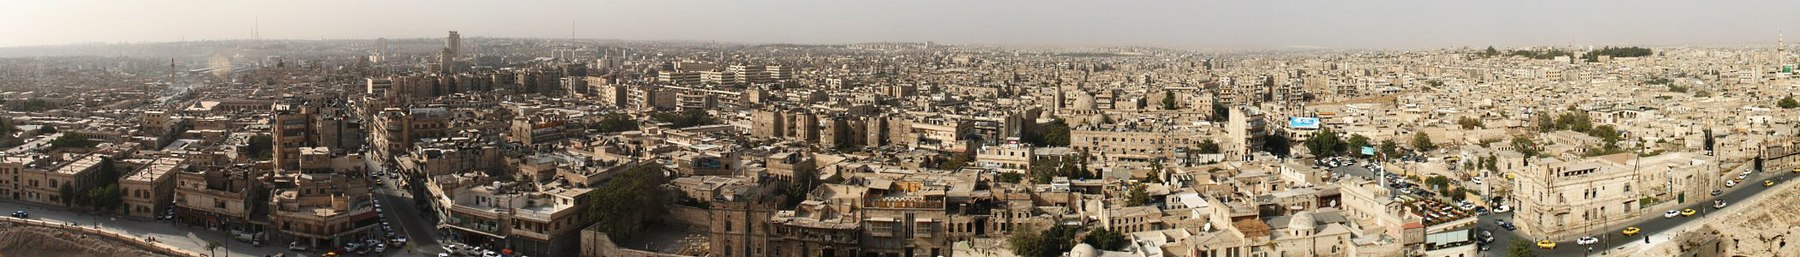 Aleppo banner.jpg